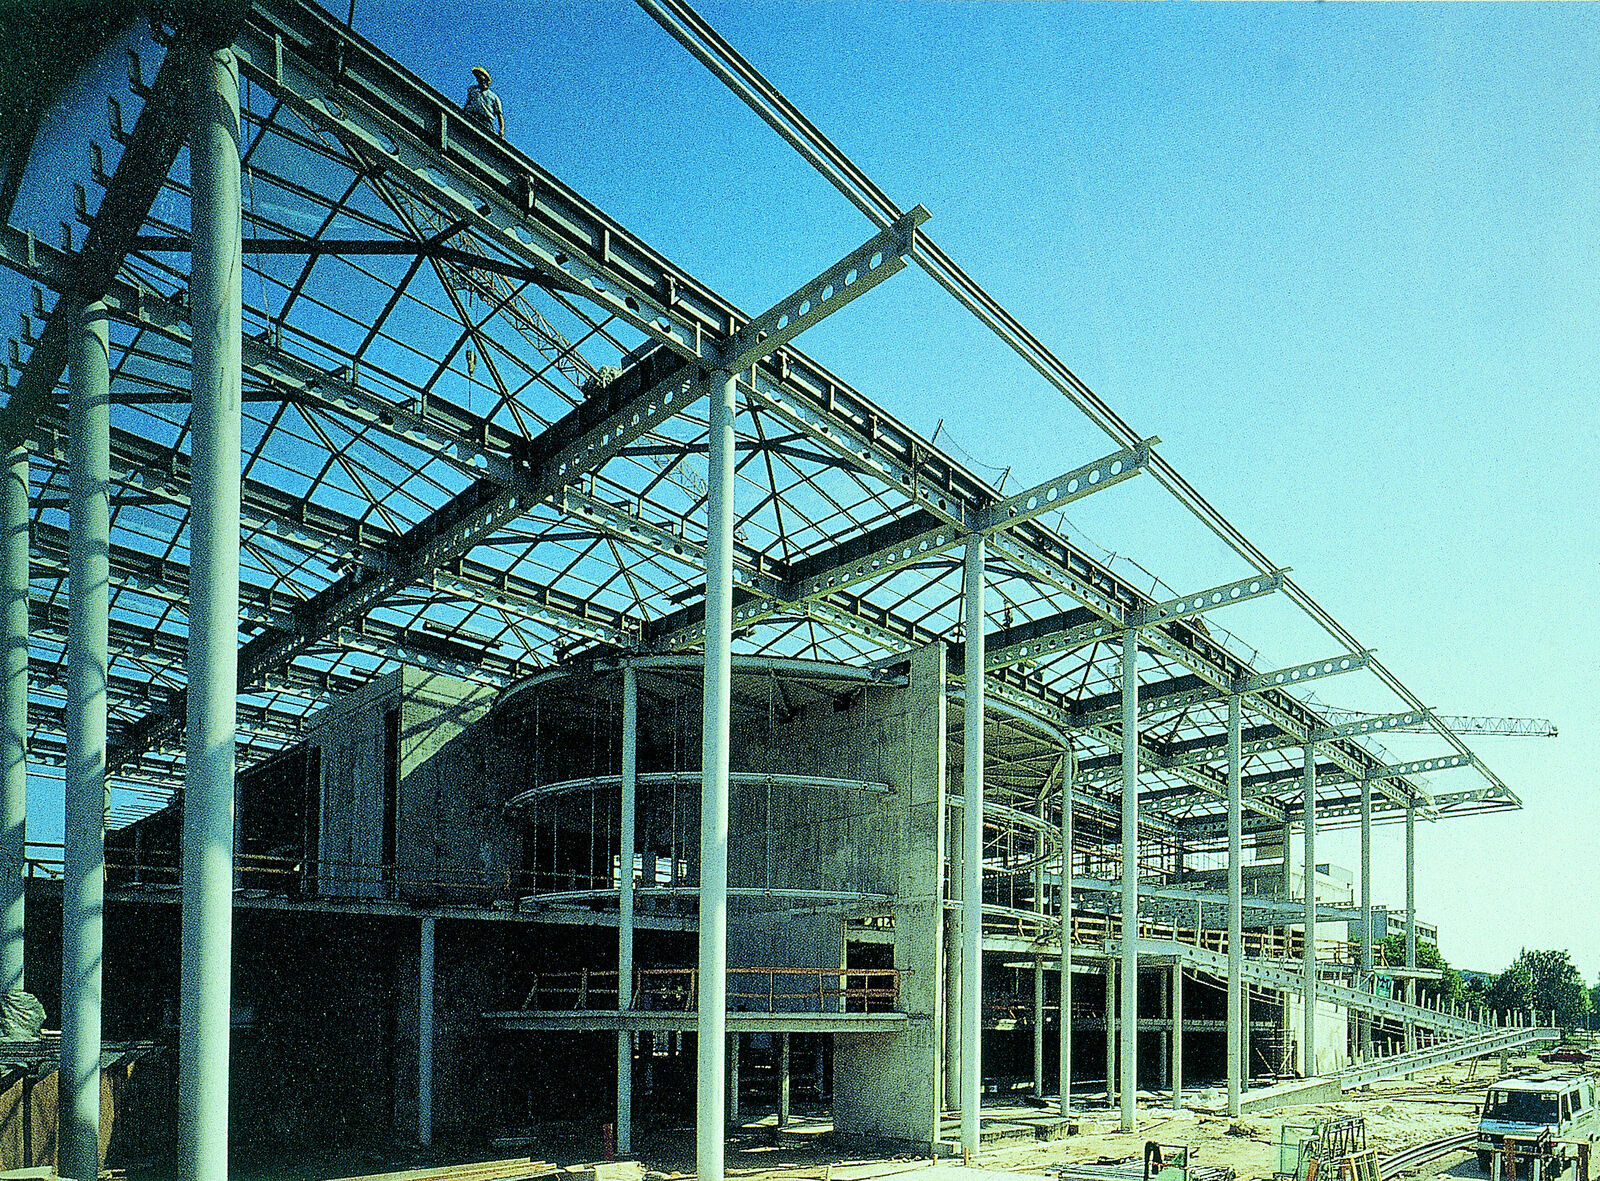 Eine Baustelle mit einem großen Stahlgerüst, das den Aufbau eines modernen Gebäudes zeigt.